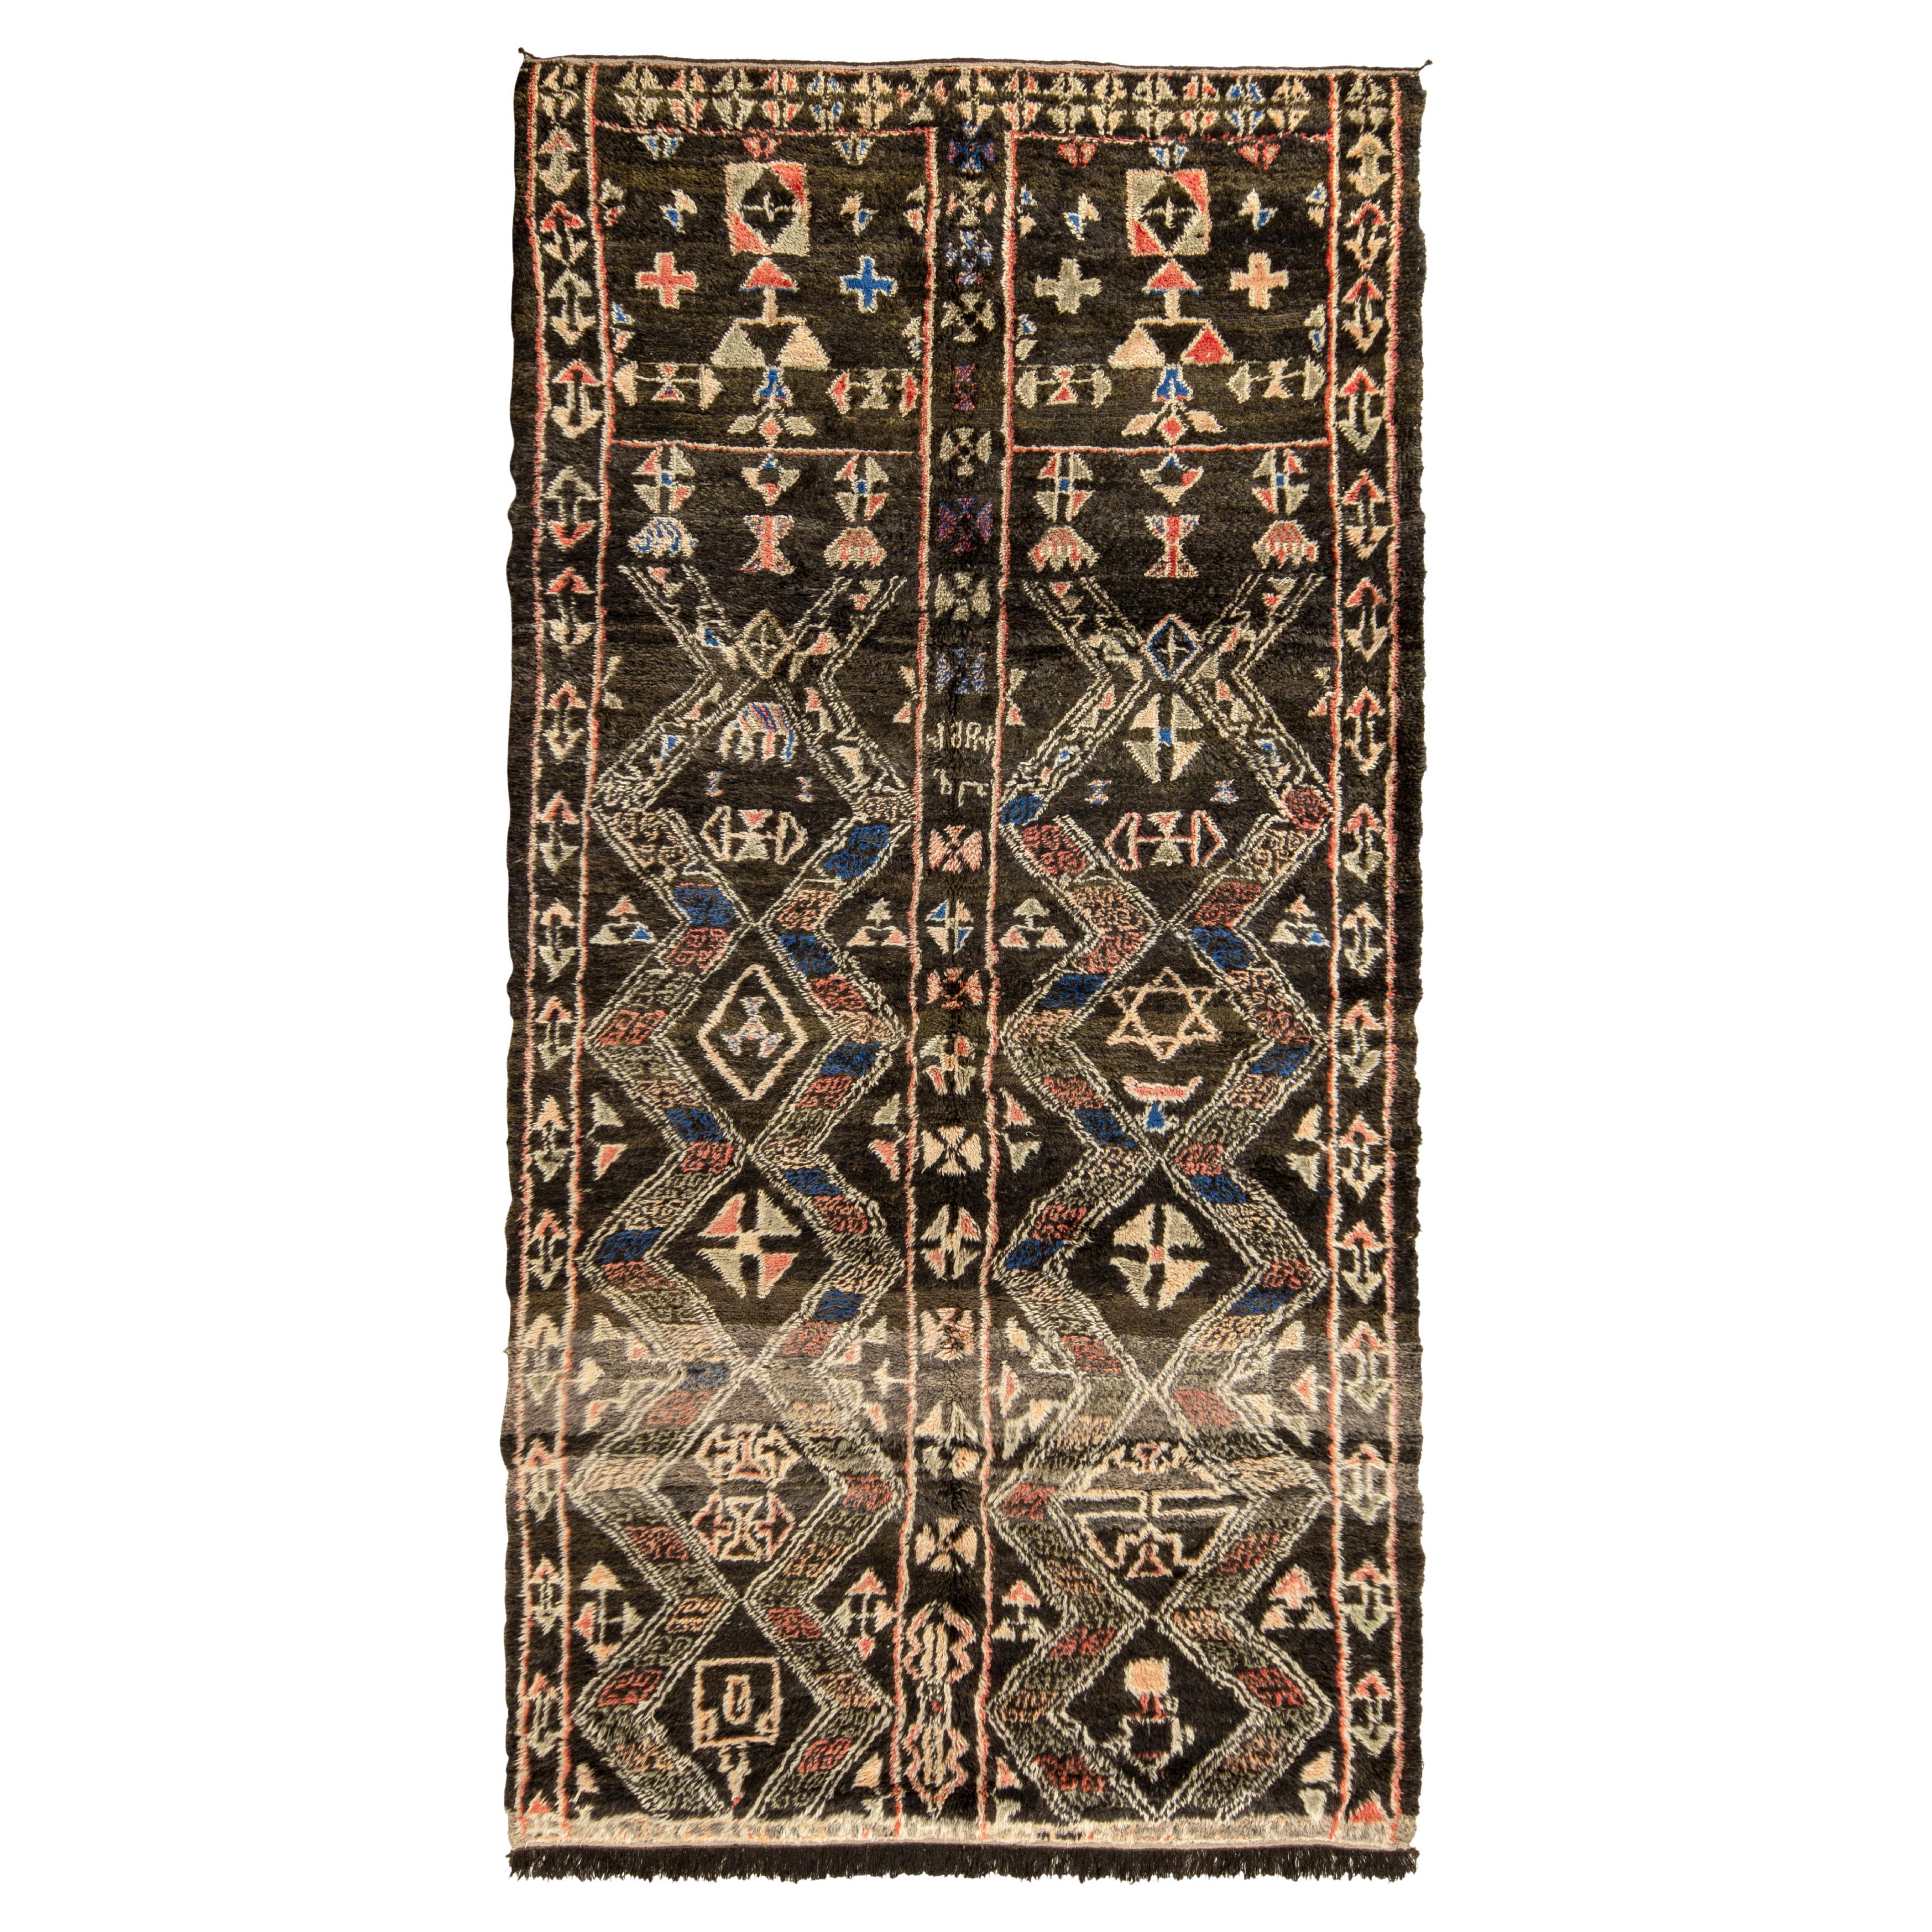 Vintage Moroccan Rug in Beige-Brown, Red Geometric Pattern by Rug & Kilim For Sale